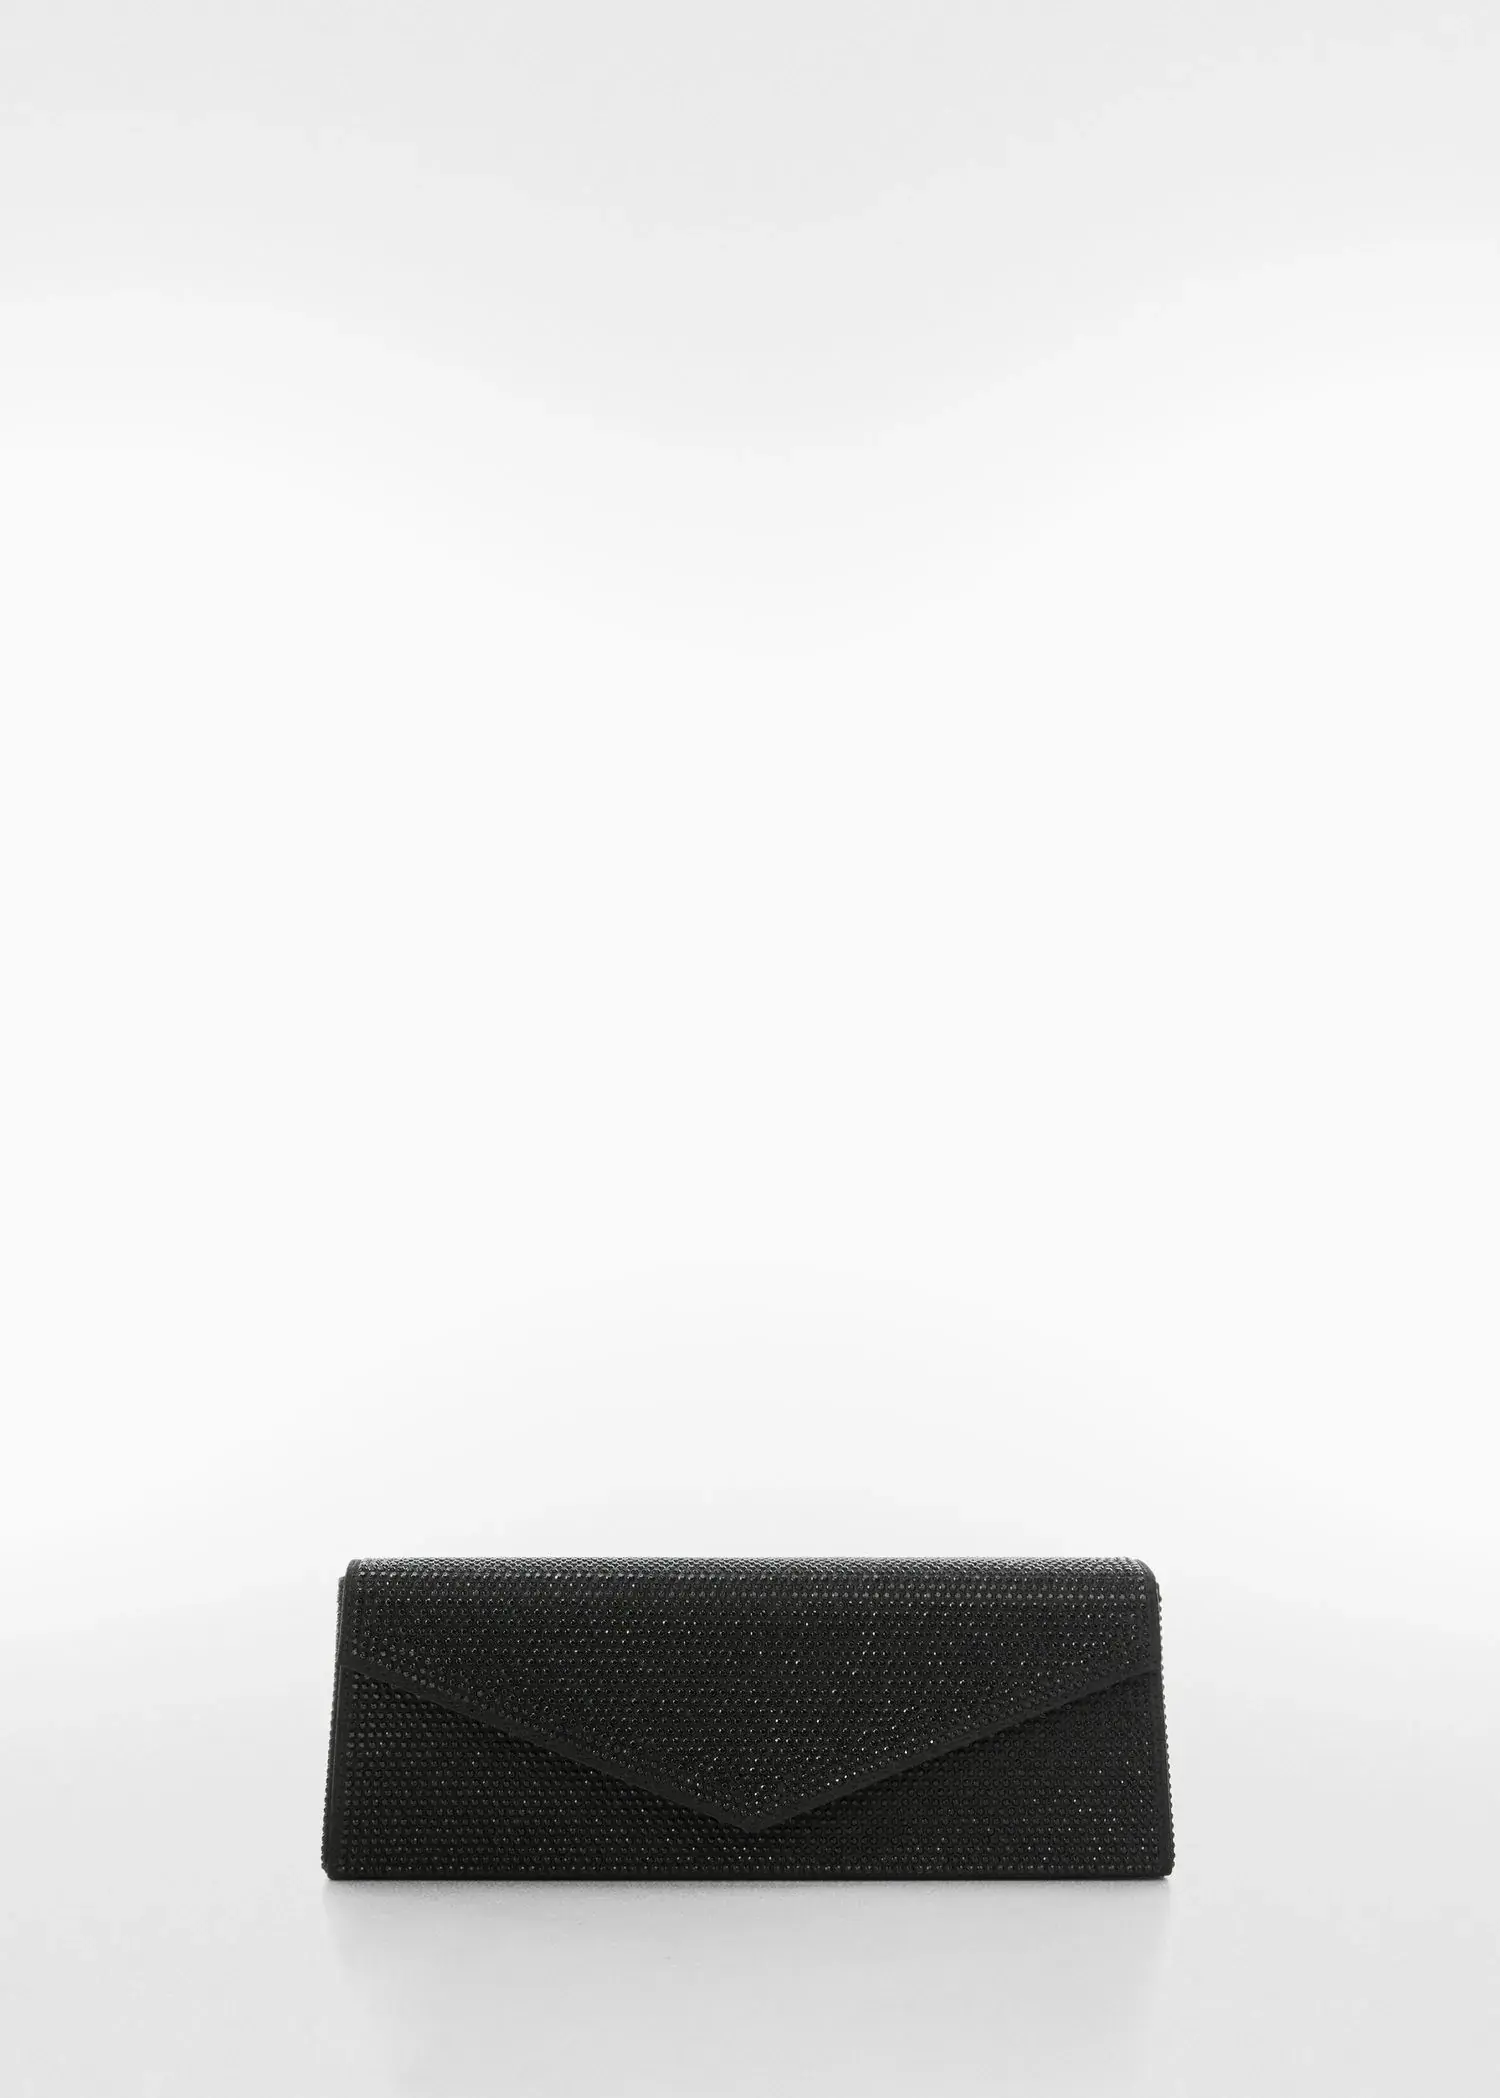 Mango Rigid crystal bag. a black purse sitting on top of a white wall. 